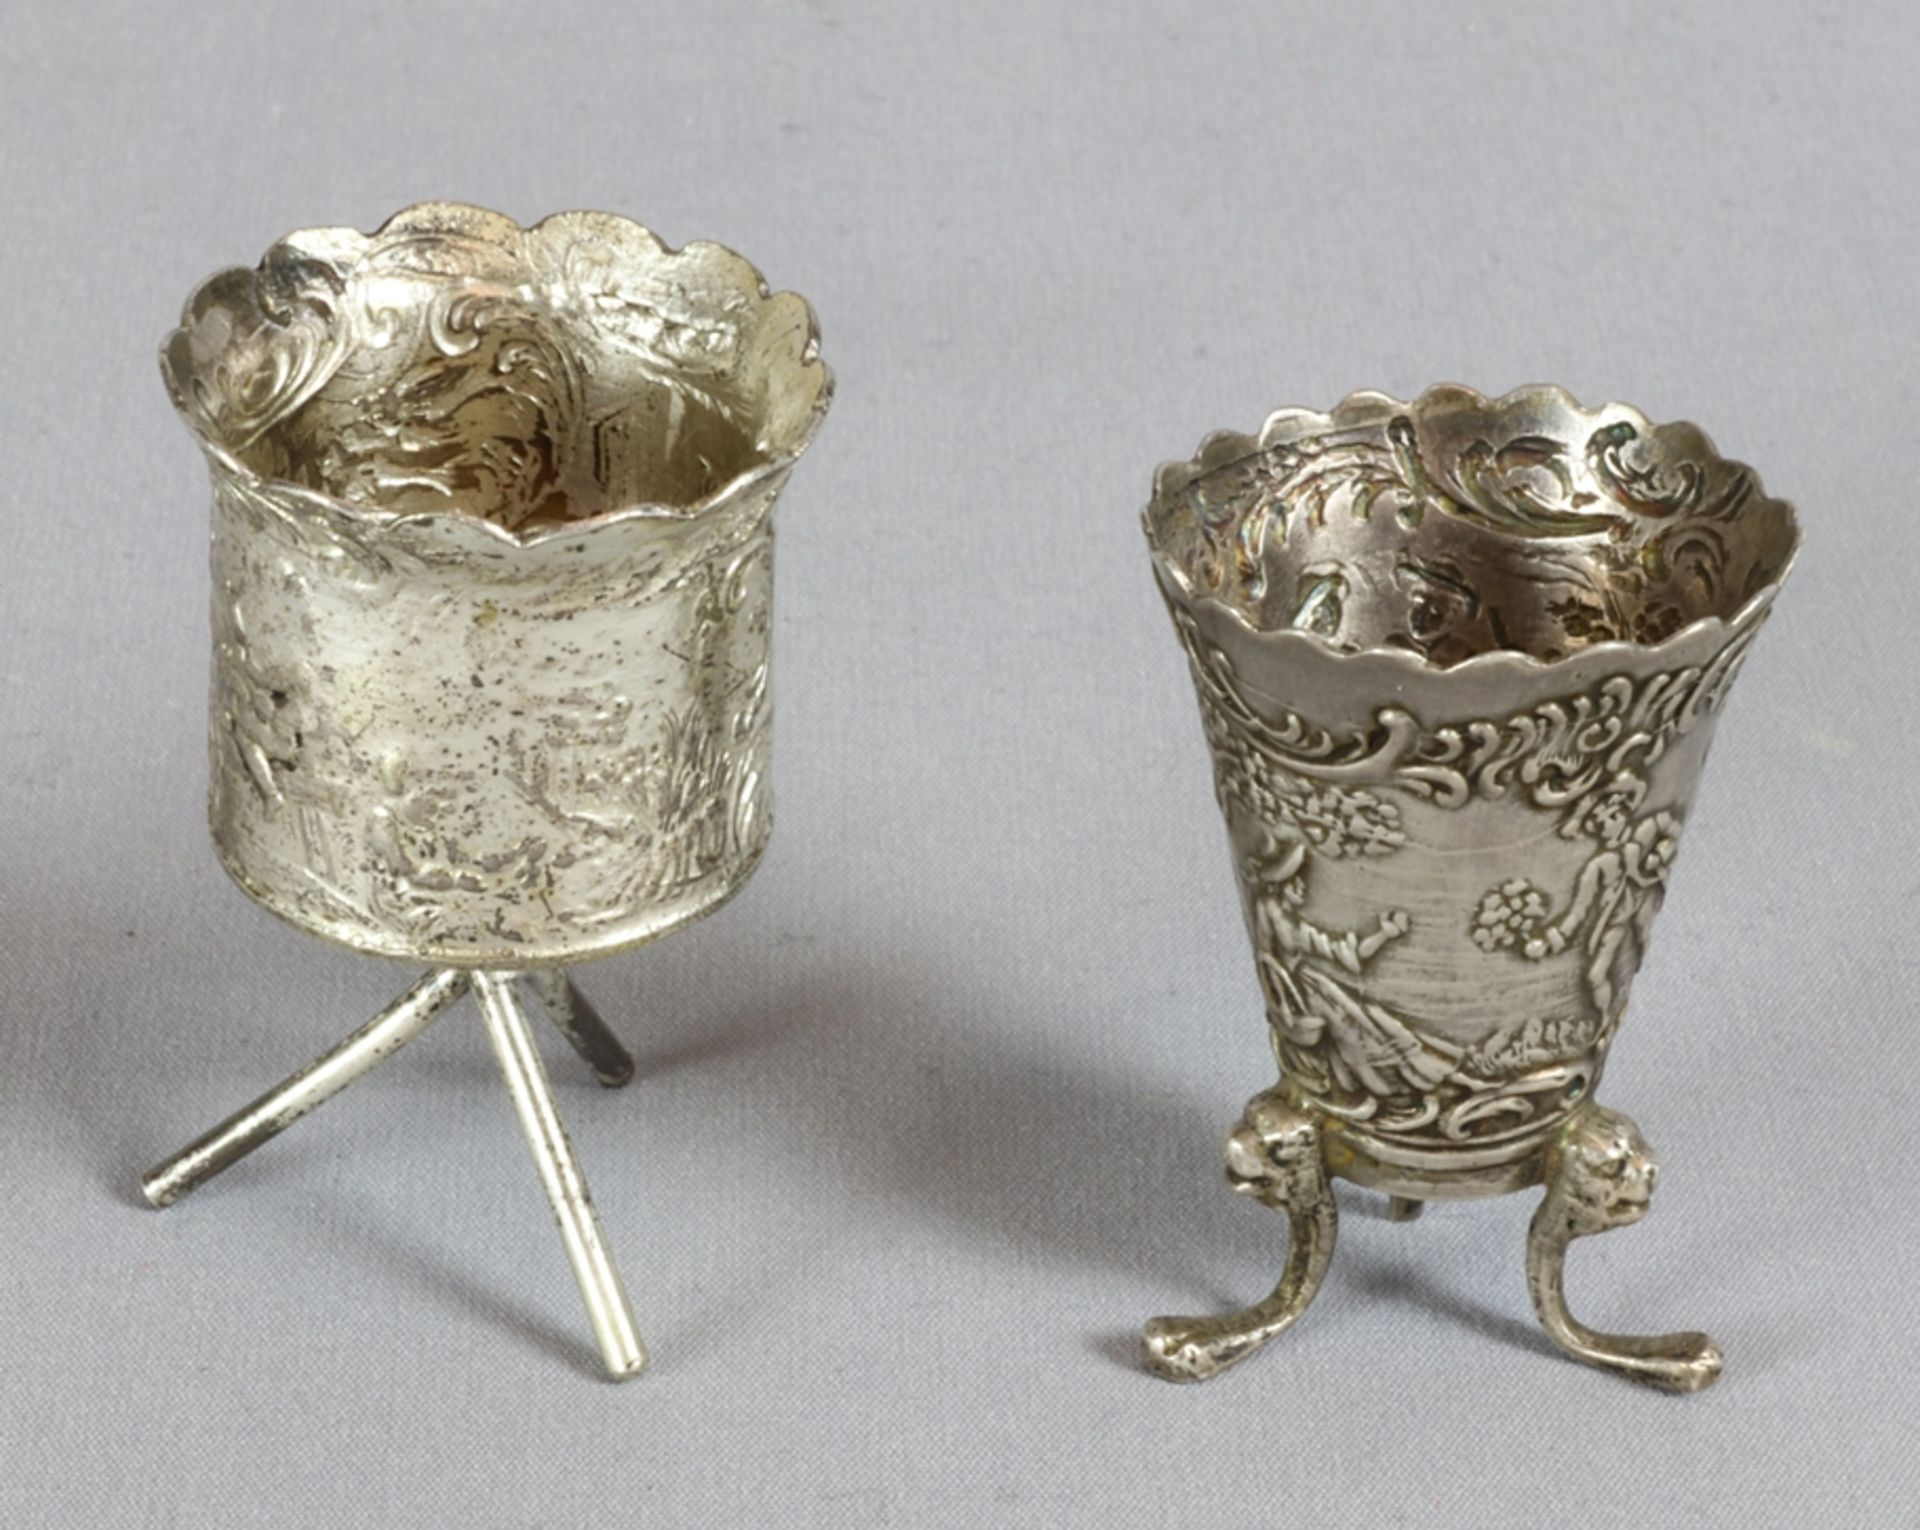 2 Miniaturkerzenhalter Historismus um 1900, gepunzt Silber 800, facettierte reich verzierte Wandung